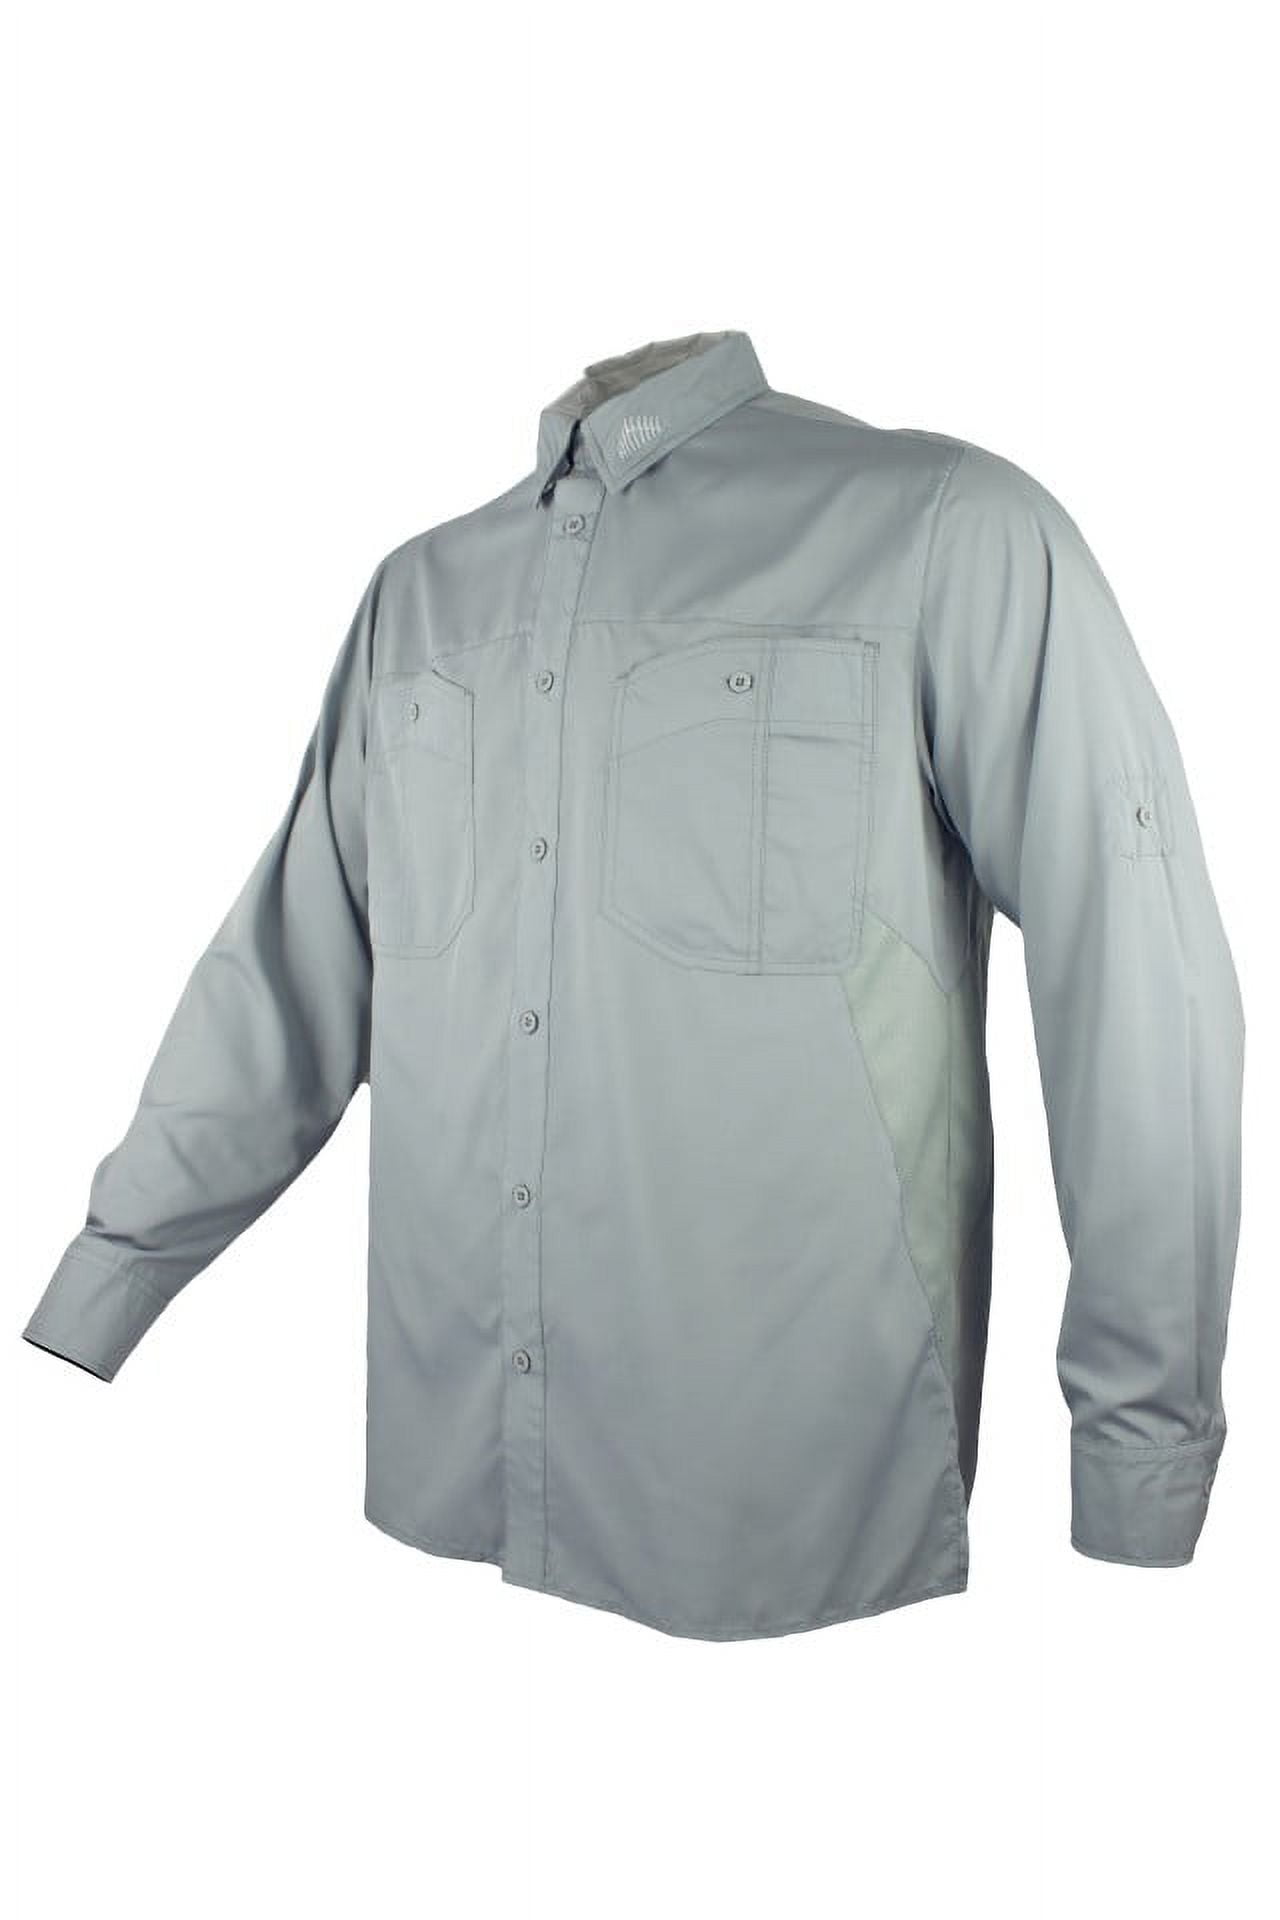 FinTech Long Sleeve Fishing Shirt for Men - XL 